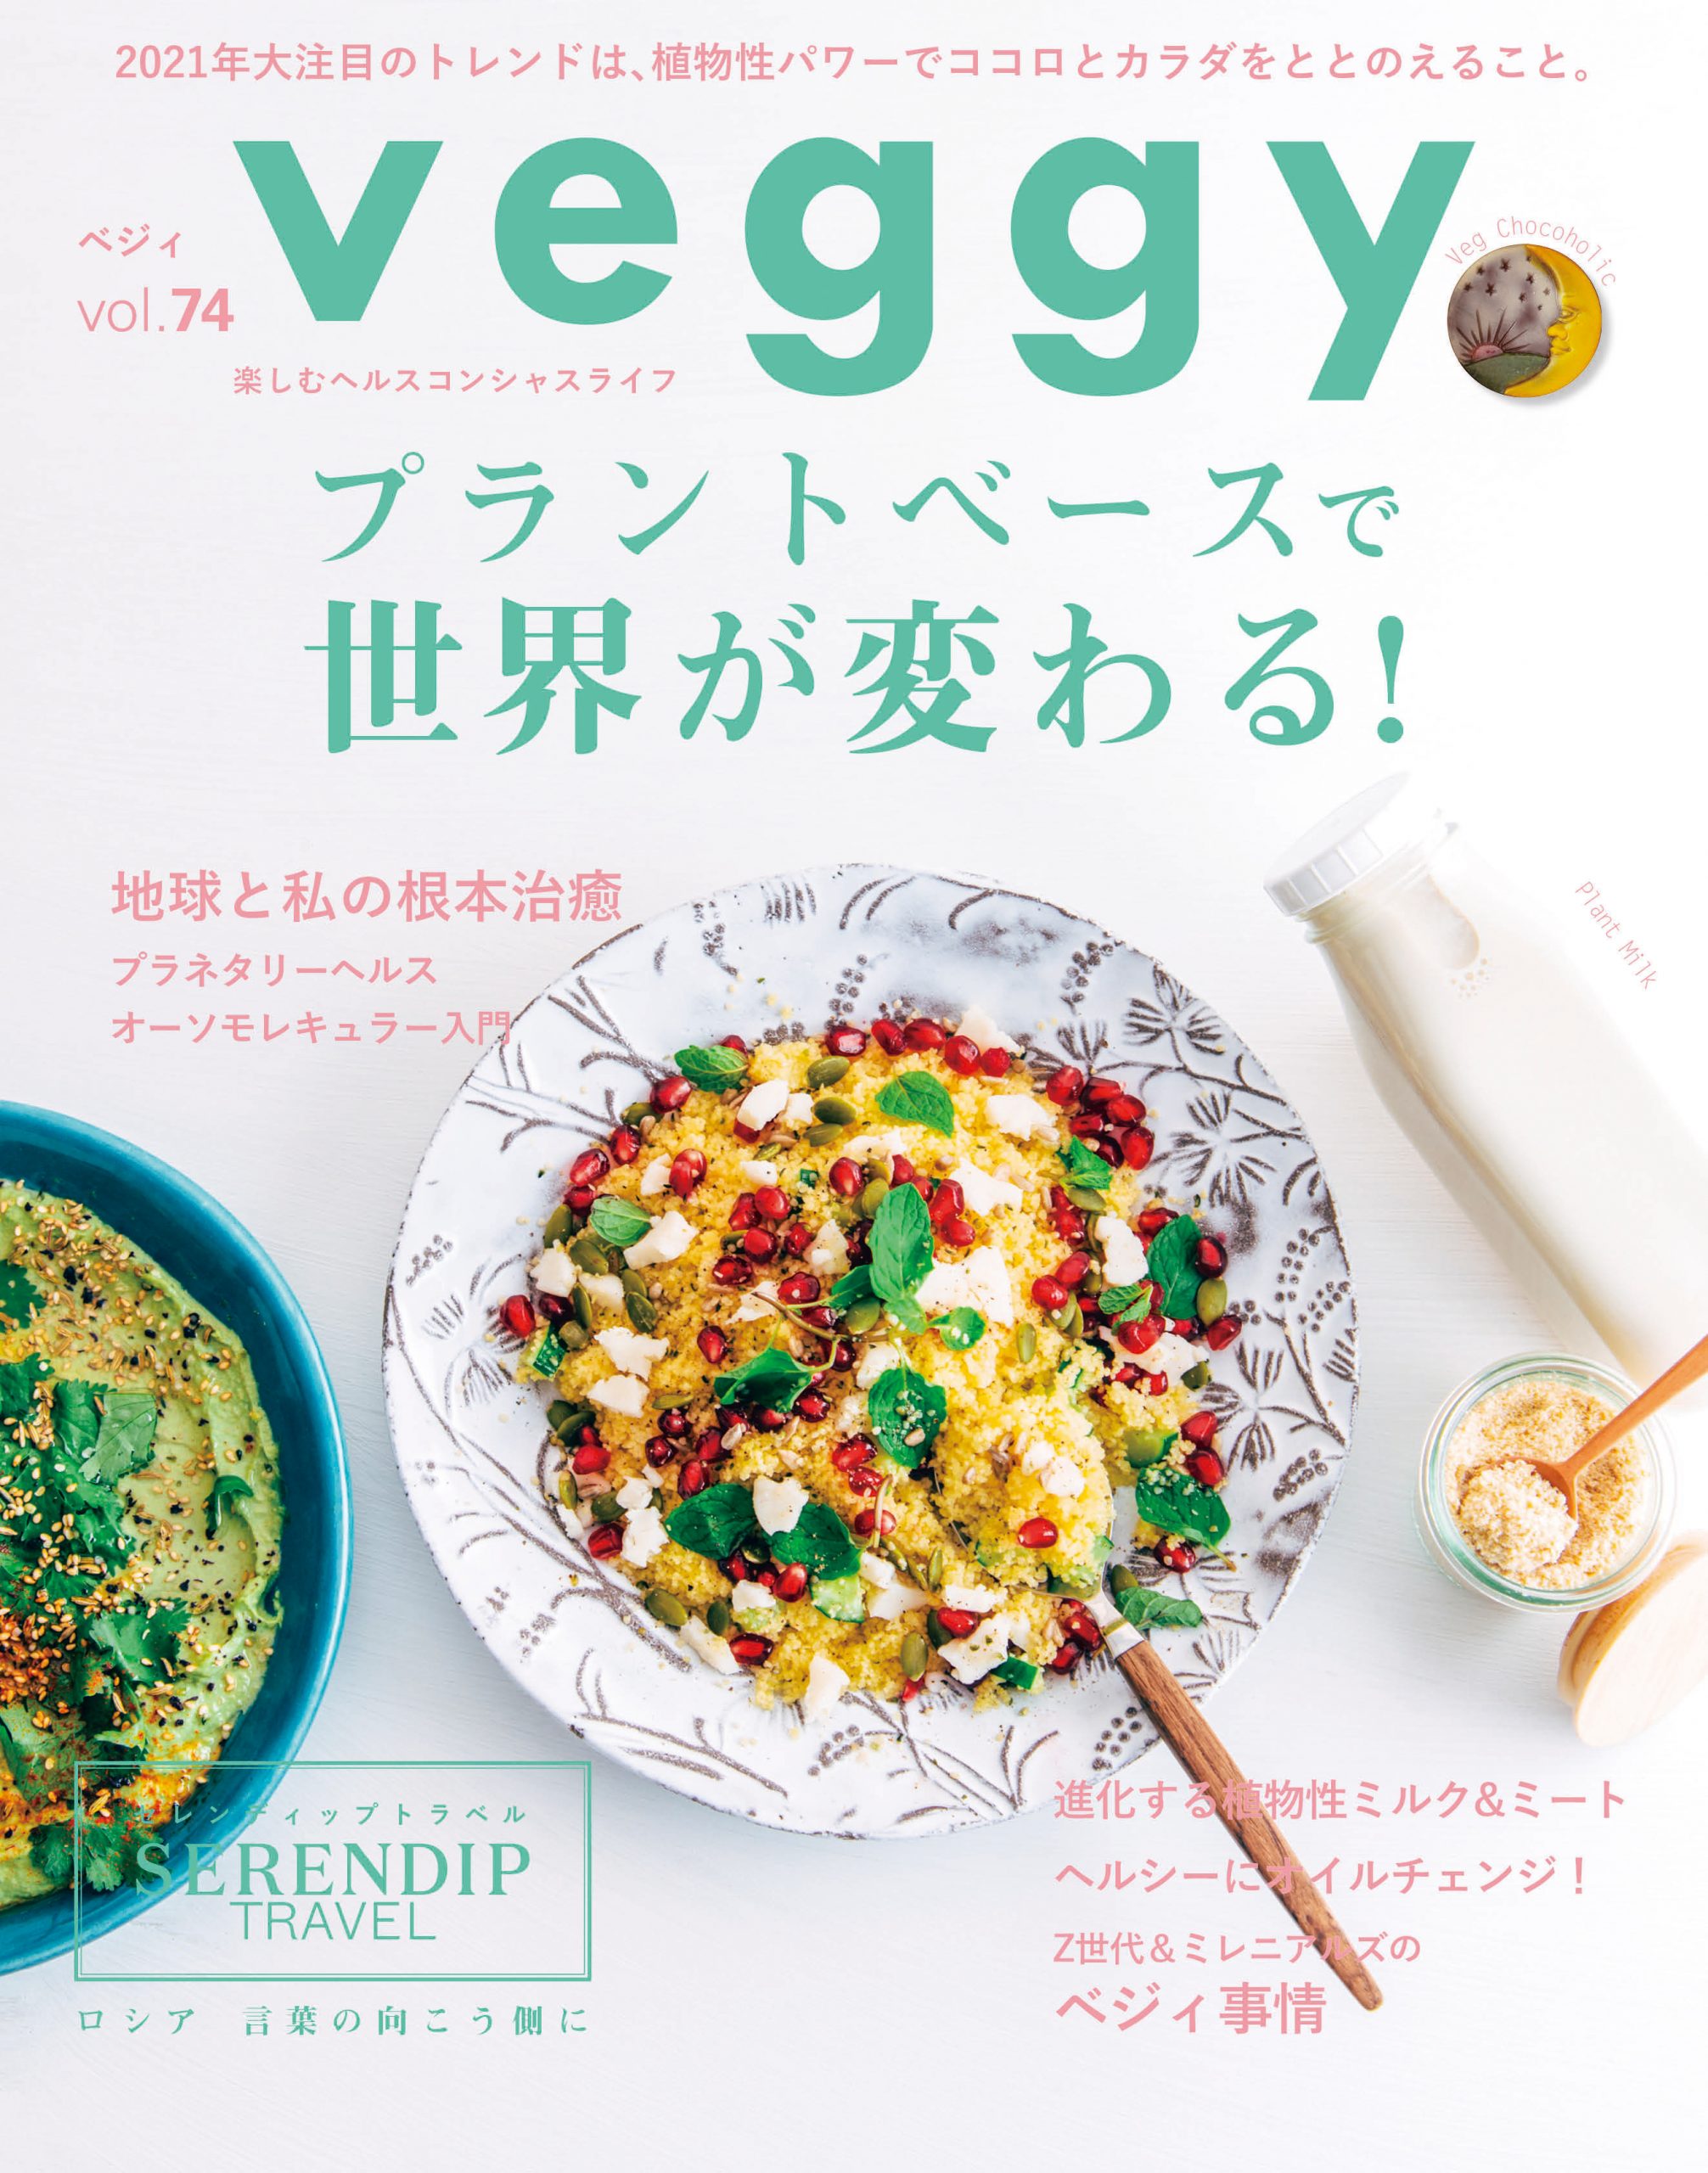 メディア掲載情報「veggy(ベジィ) 」 vol.74（2021年1月9日）